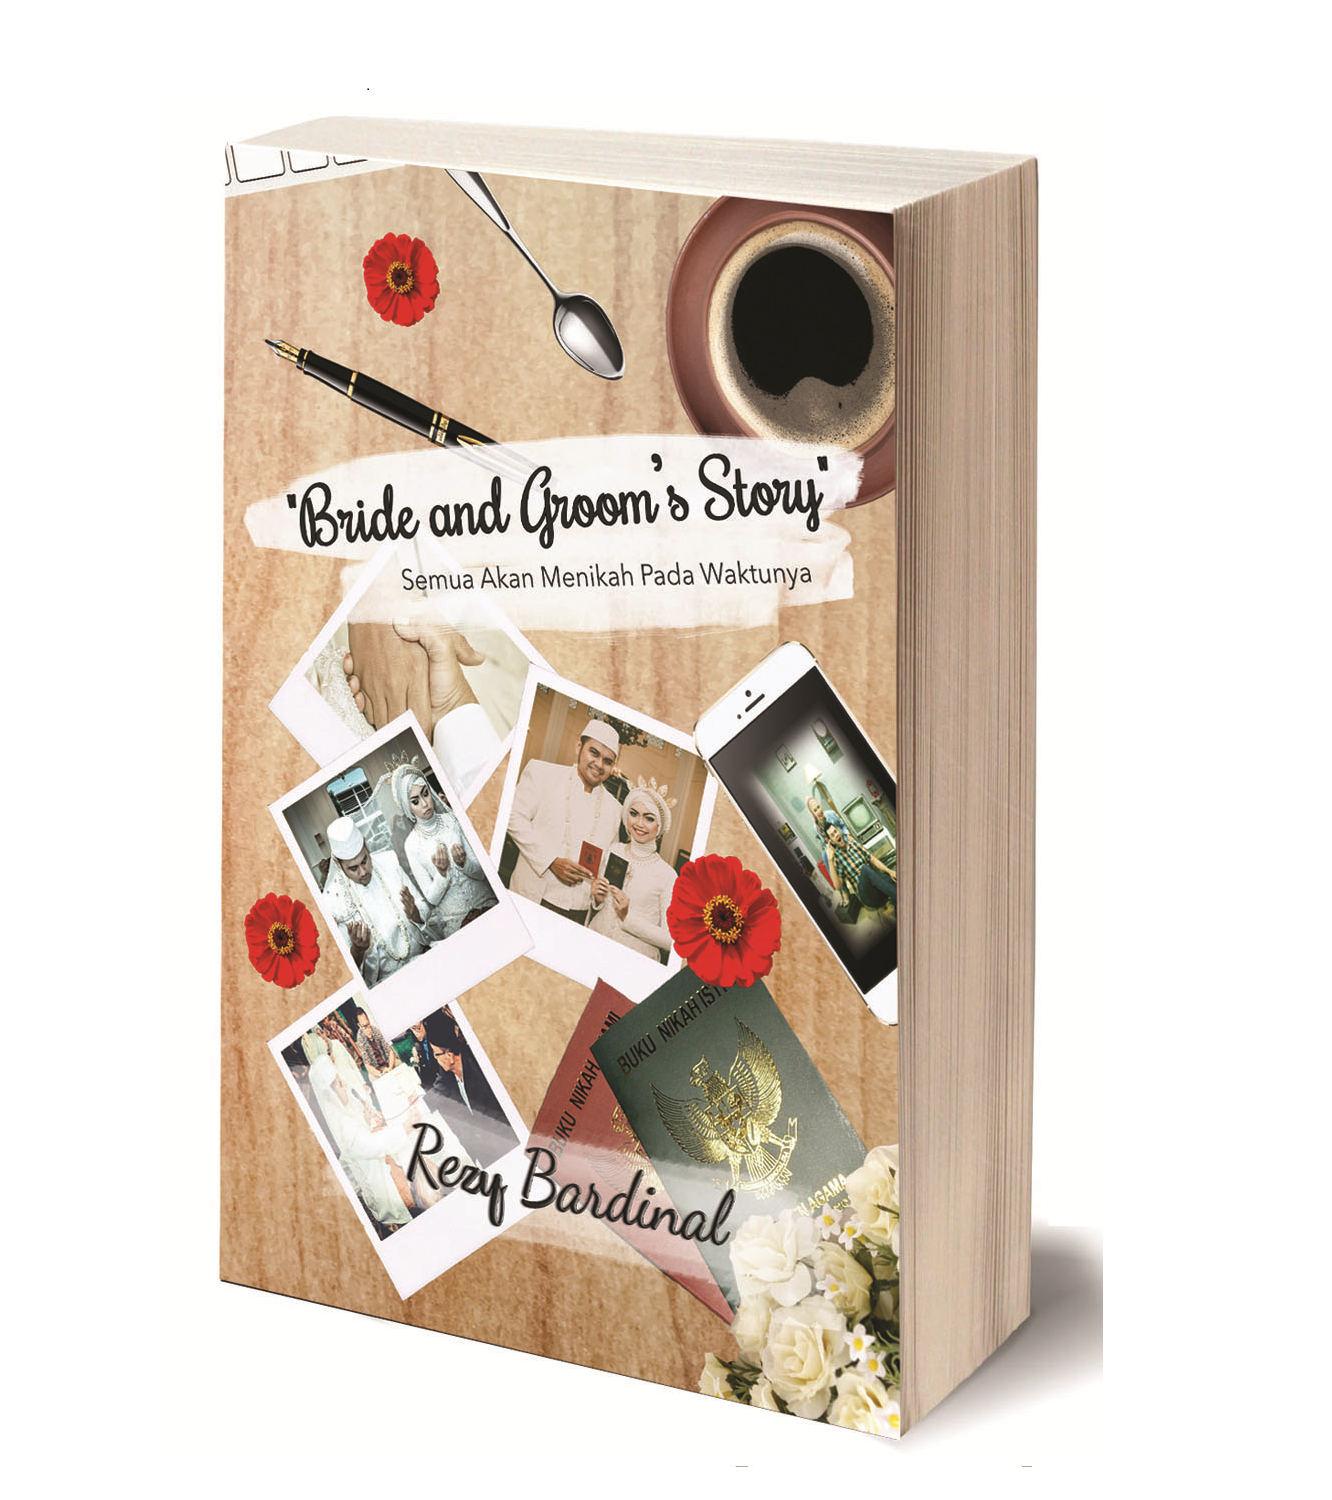 Buku kedua gue "Bride and Groom's Story" (Semua Akan Menikah Pada Waktunya)